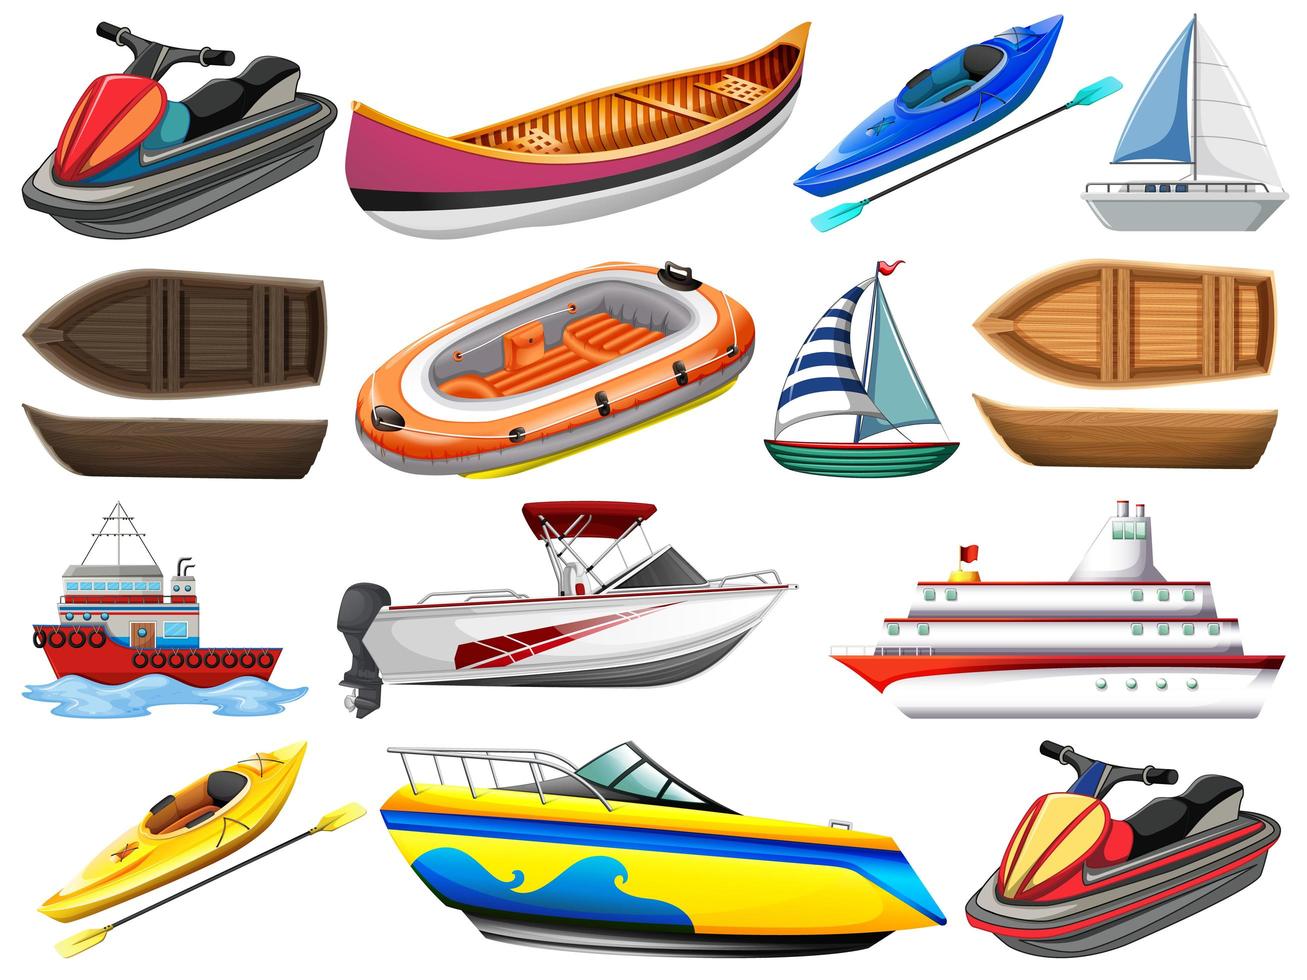 Satz verschiedene Arten von Booten und Schiff lokalisiert auf weißem Hintergrund vektor